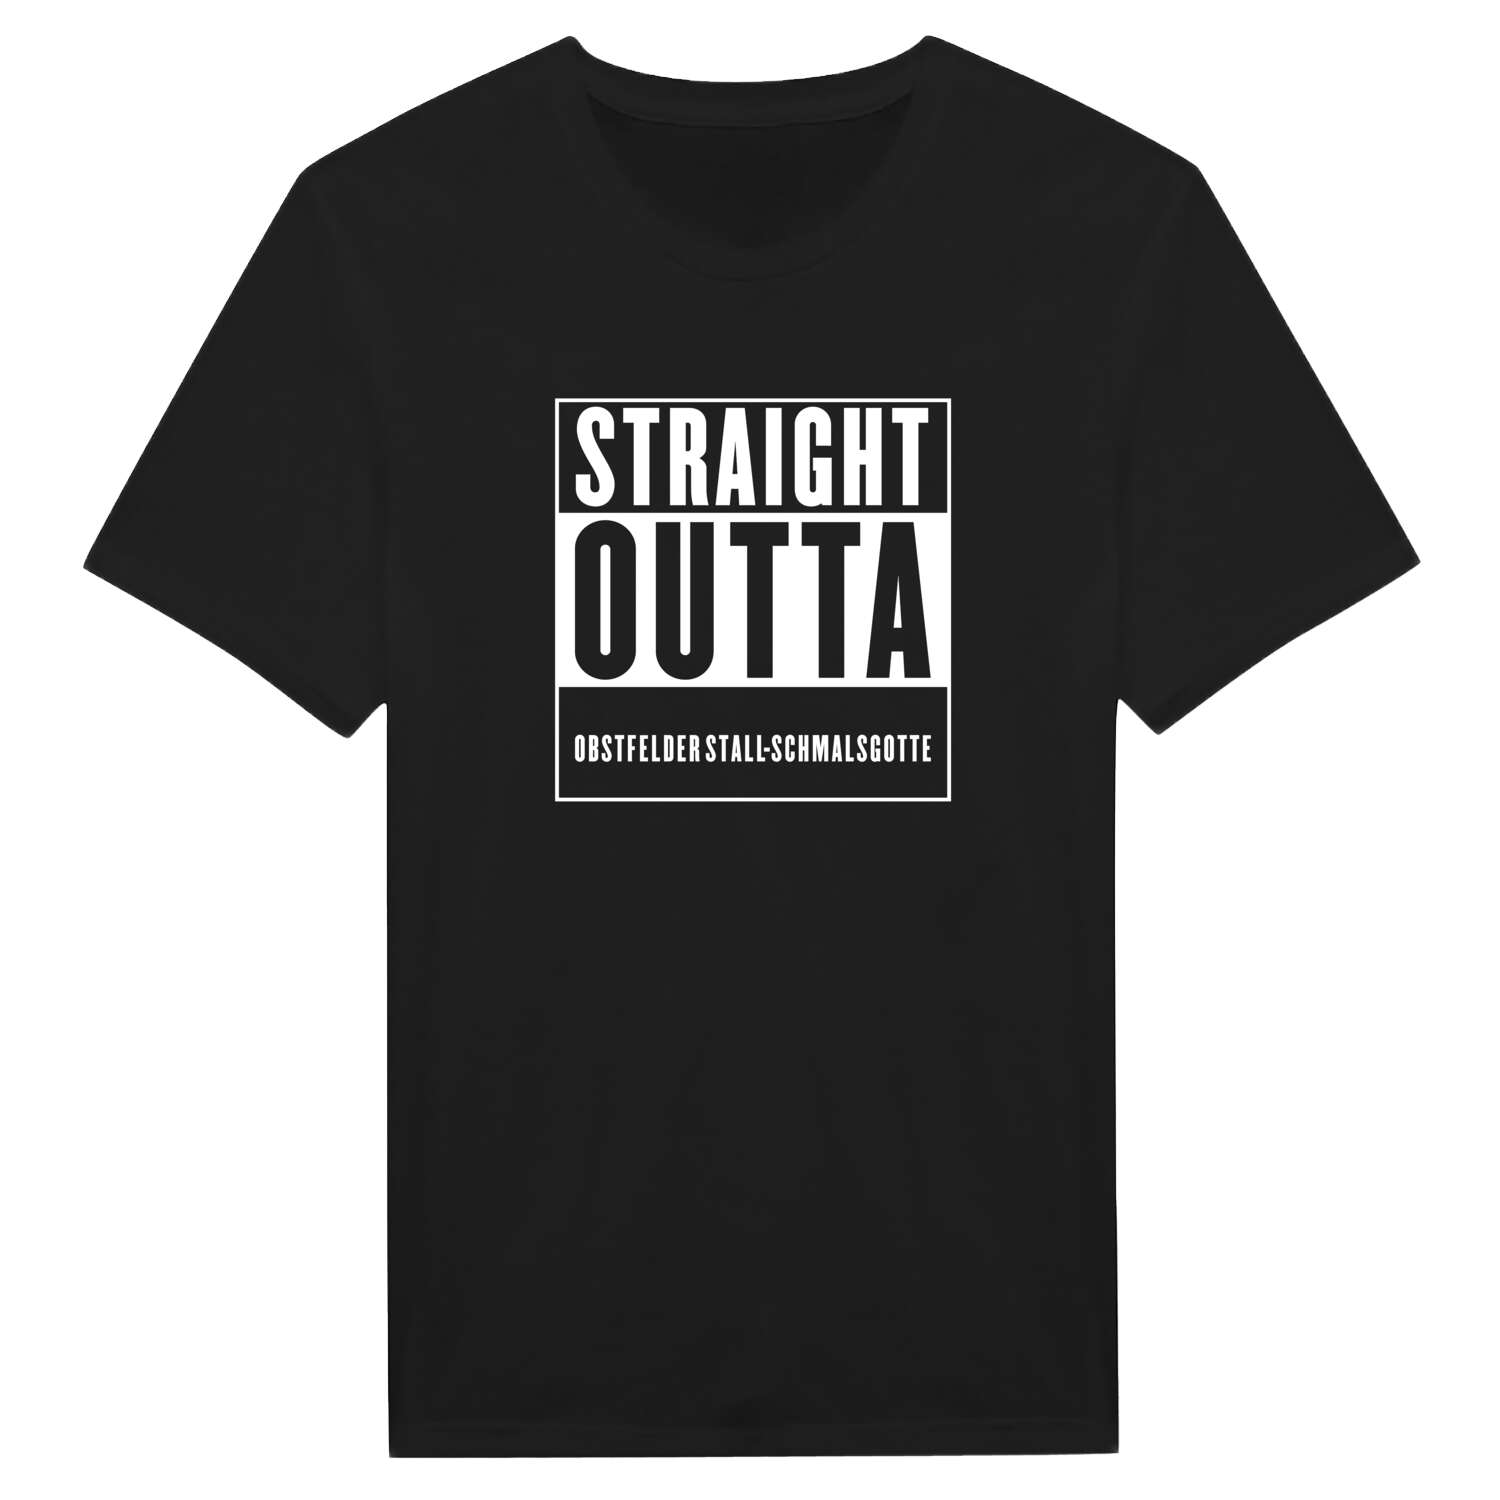 Obstfelder Stall-Schmalsgotte T-Shirt »Straight Outta«